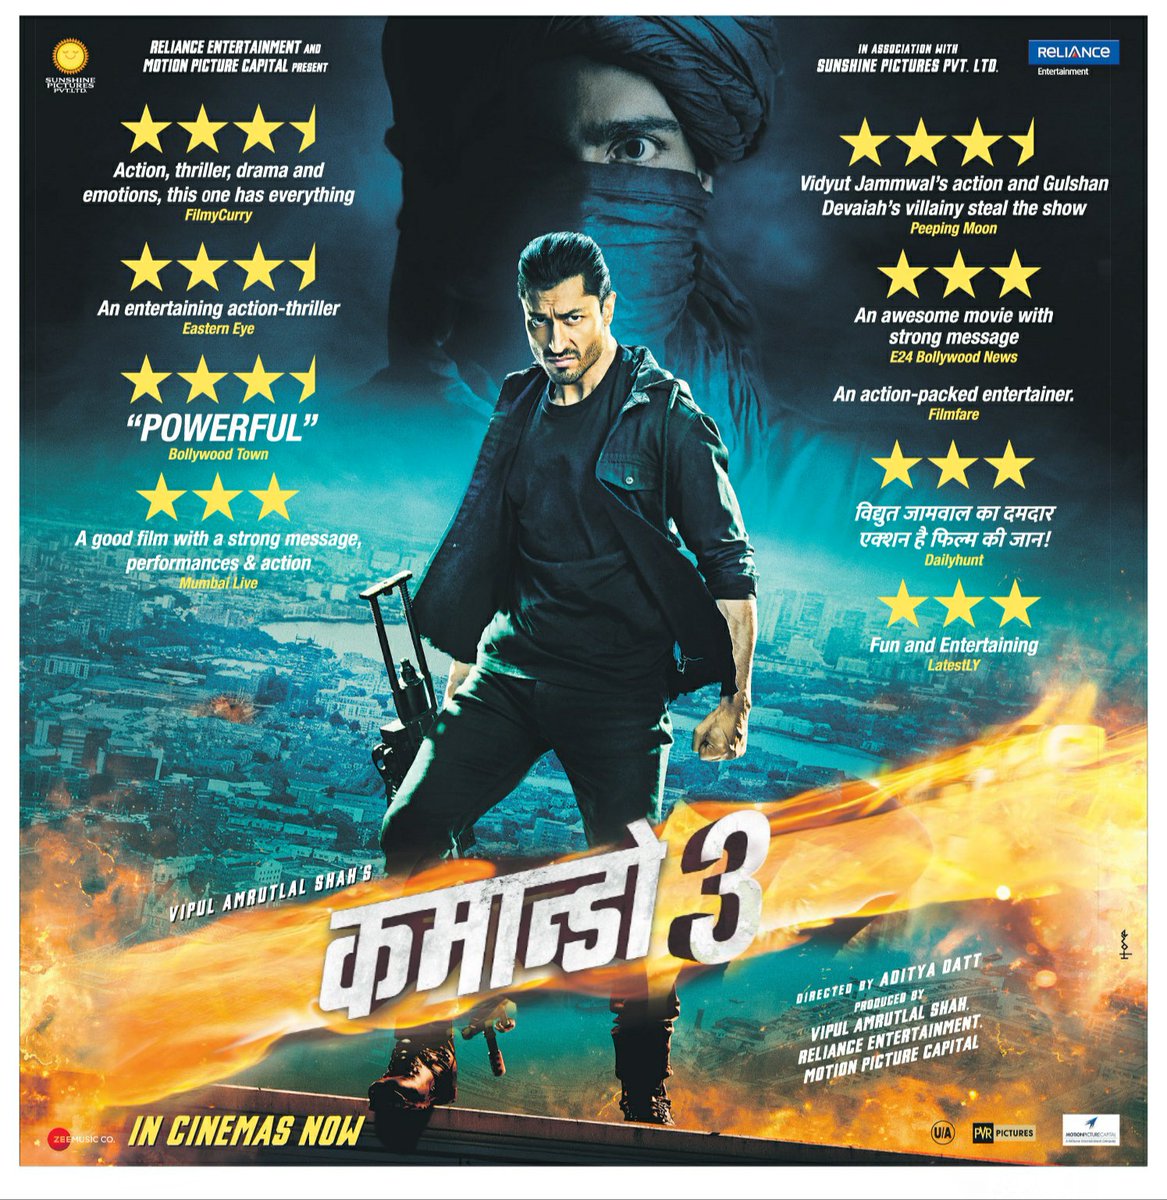 Here is new #HindiPoster of #Commando3  in cinemas now. इंडिया की सबसे बड़ा एक्शन थ्रिलर   #कमांडो3 अब सिनेमाघरों में।